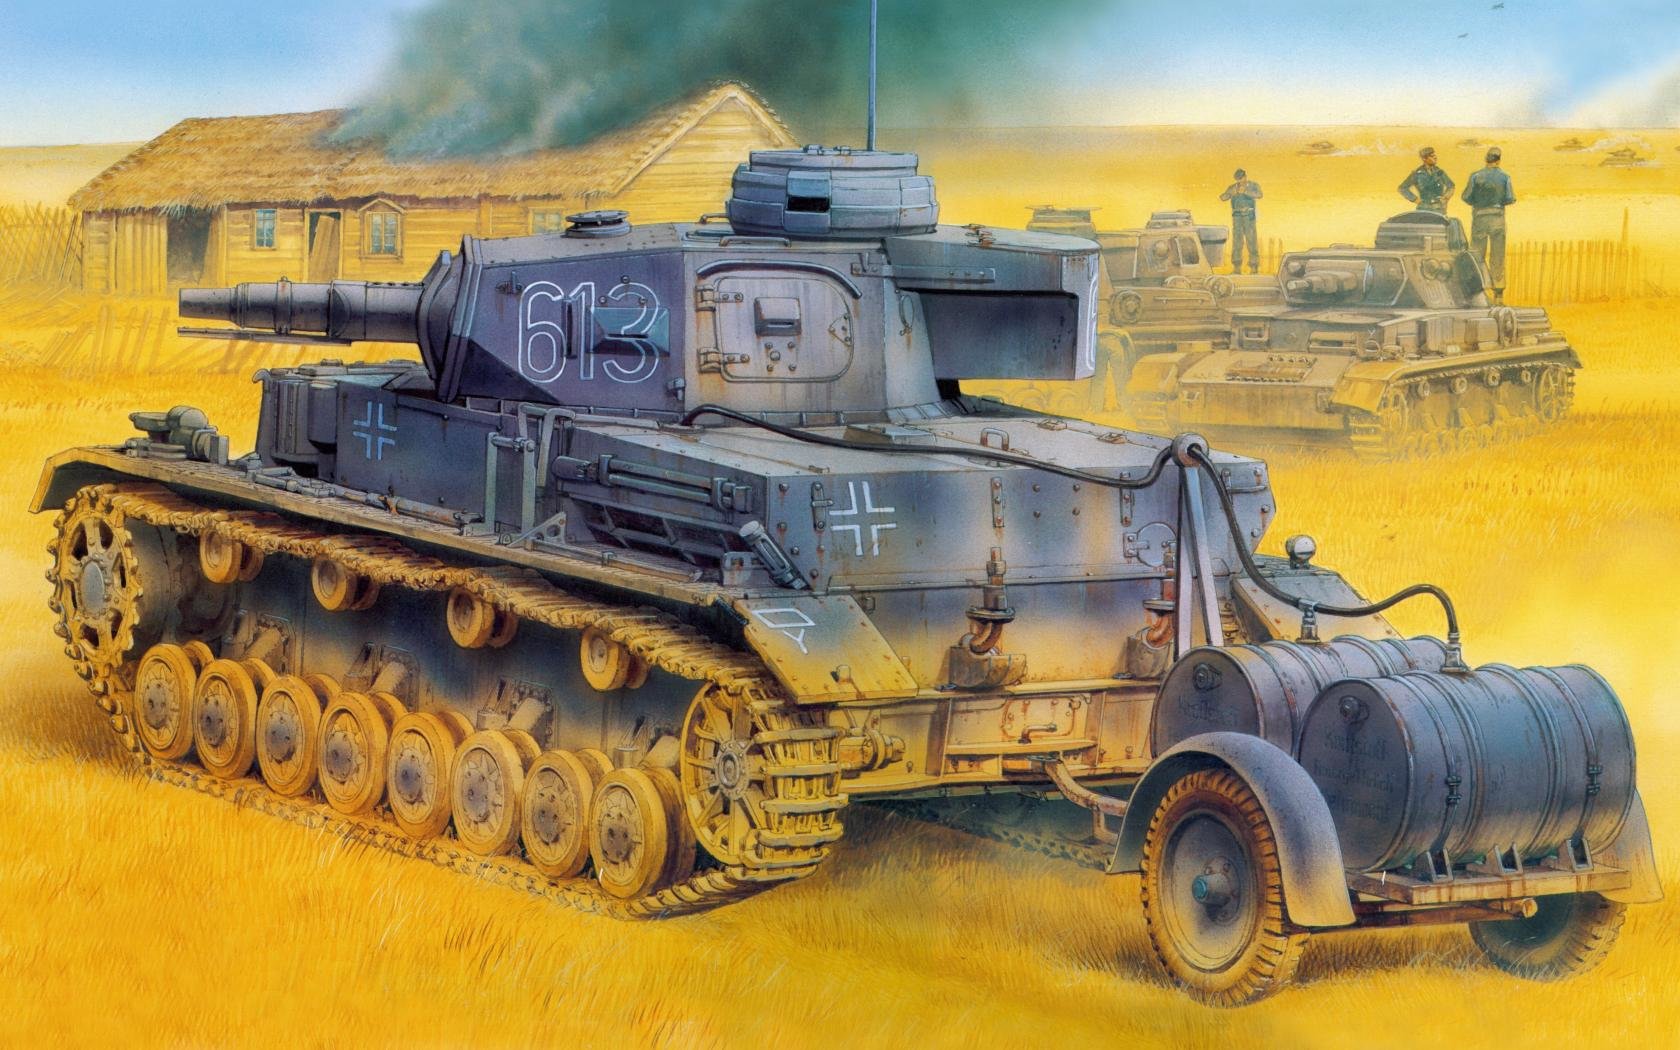 Best Panzer IV wallpaper ID:47113 for High Resolution hd 1680x1050 desktop